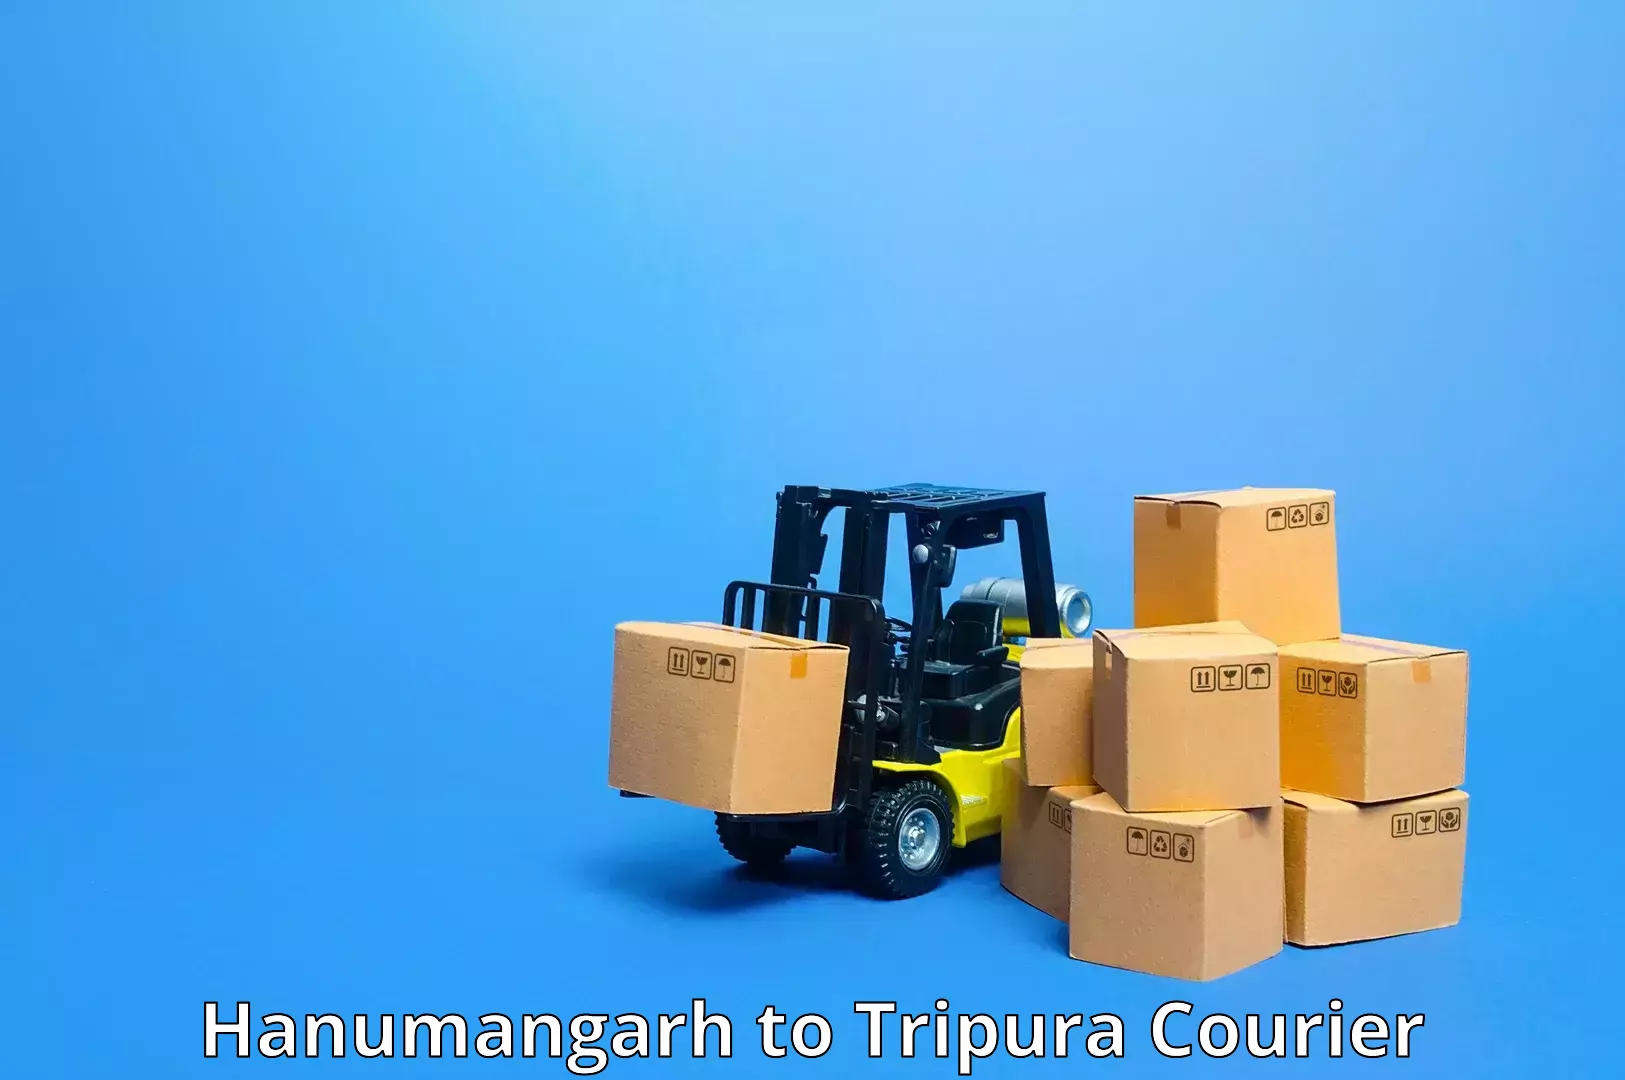 Premium courier solutions Hanumangarh to Udaipur Tripura